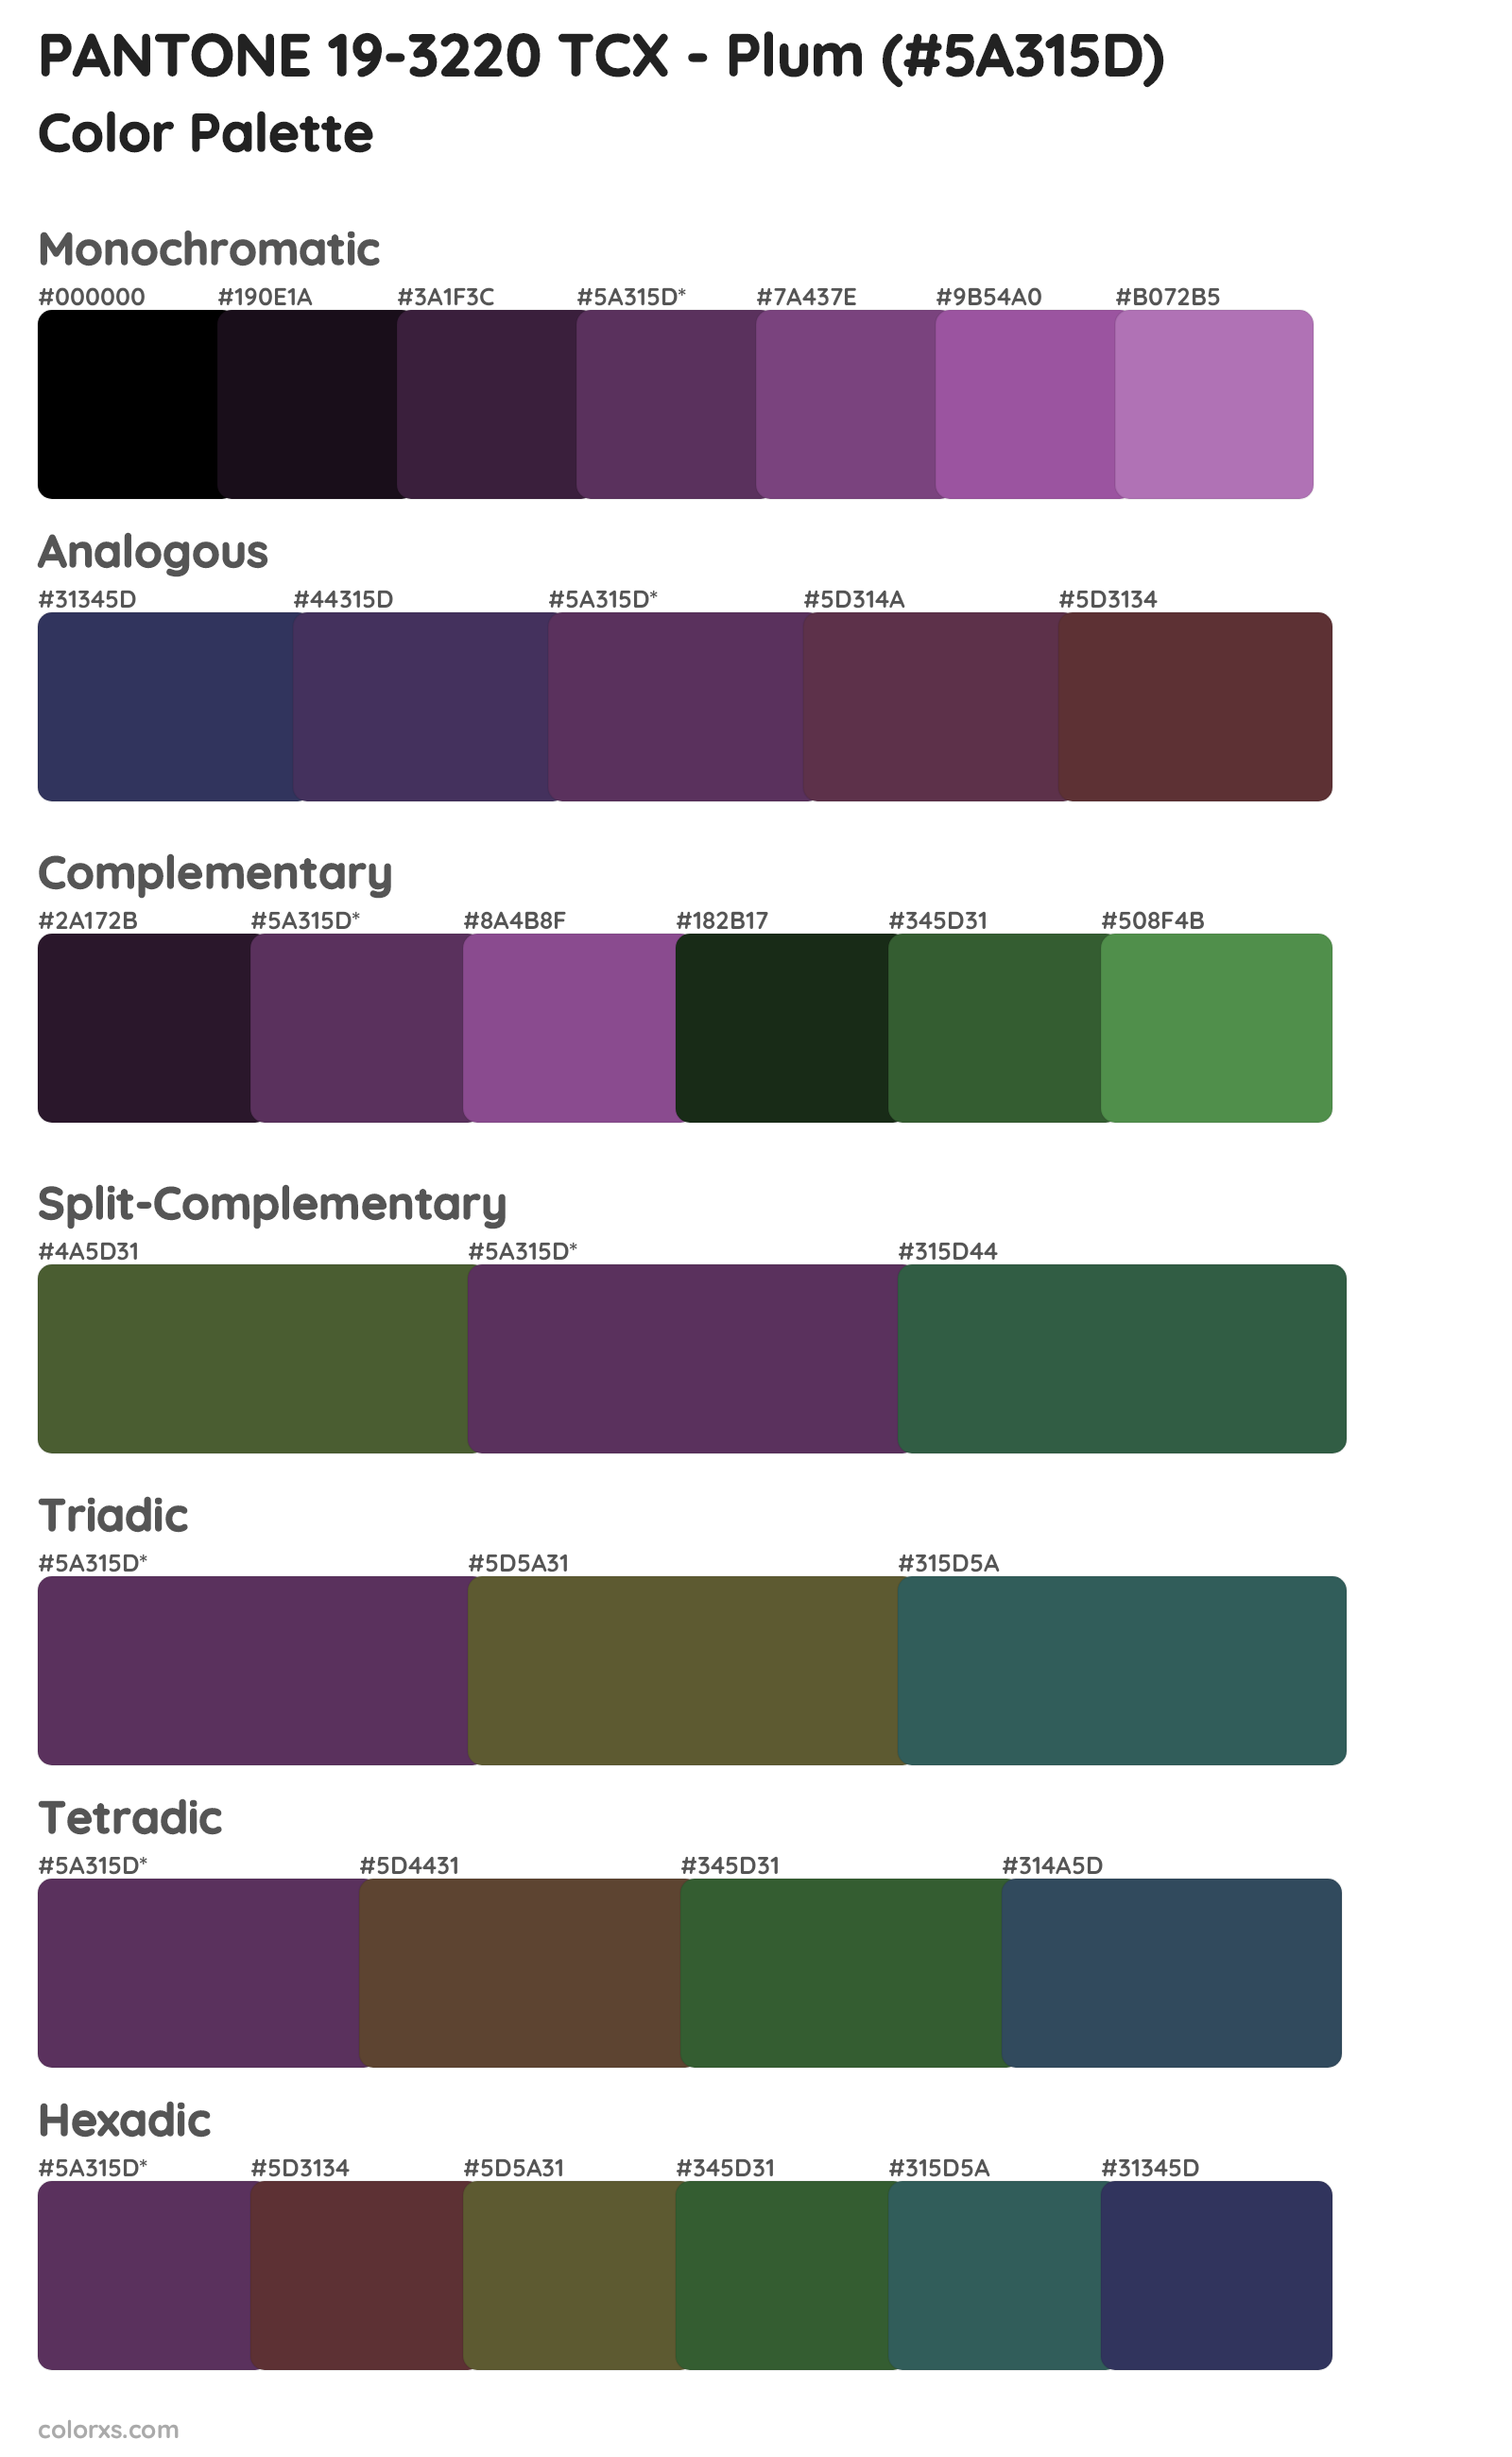 PANTONE 19-3220 TCX - Plum Color Scheme Palettes